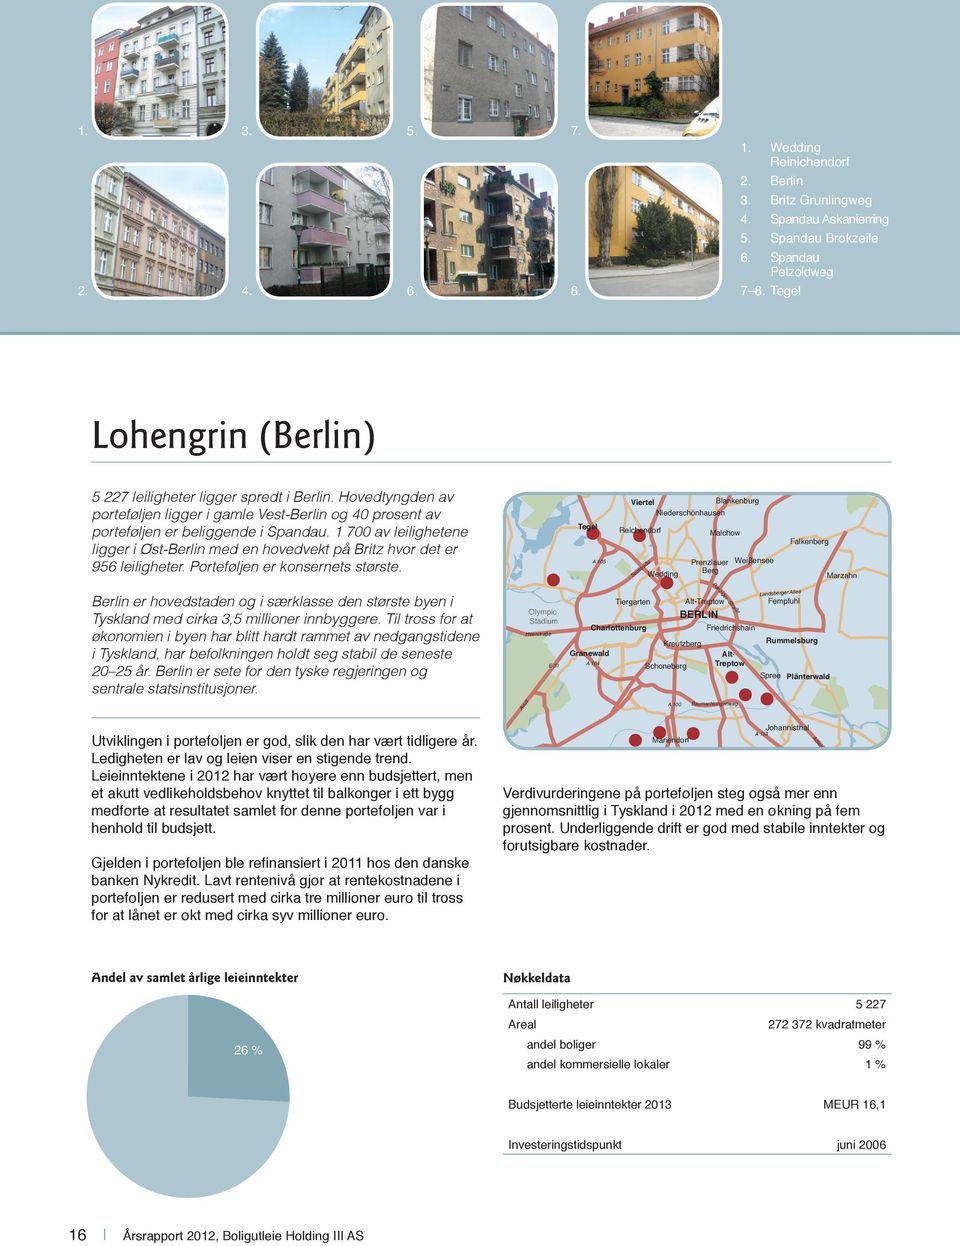 Hovedtyngden av porteføljen ligger i gamle Vest-Berlin og 40 prosent av porteføljen er beliggende i Spandau.